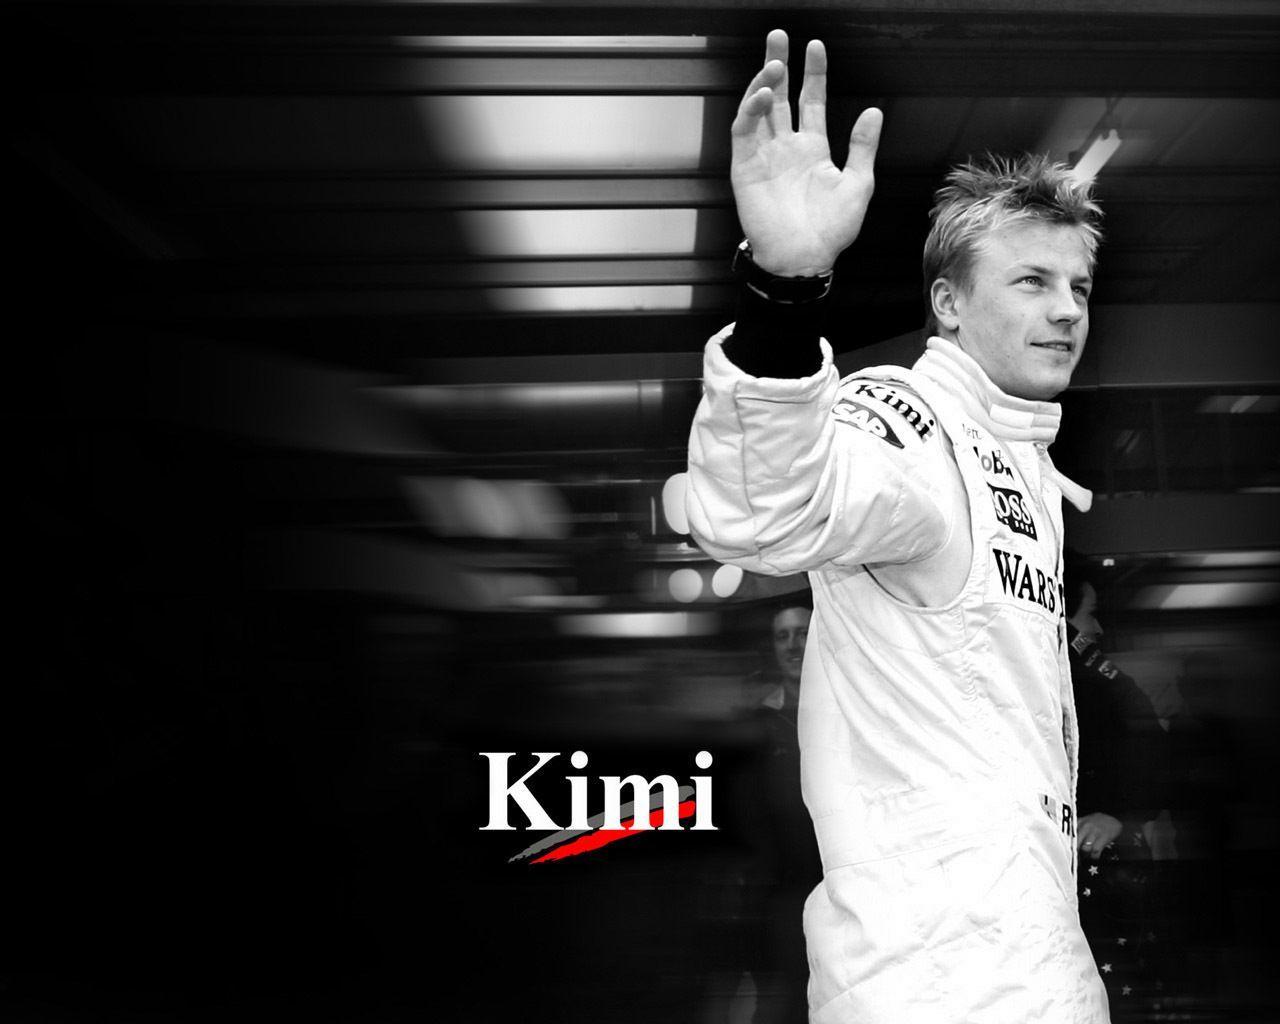 Kimi <3 Räikkönen Wallpaper